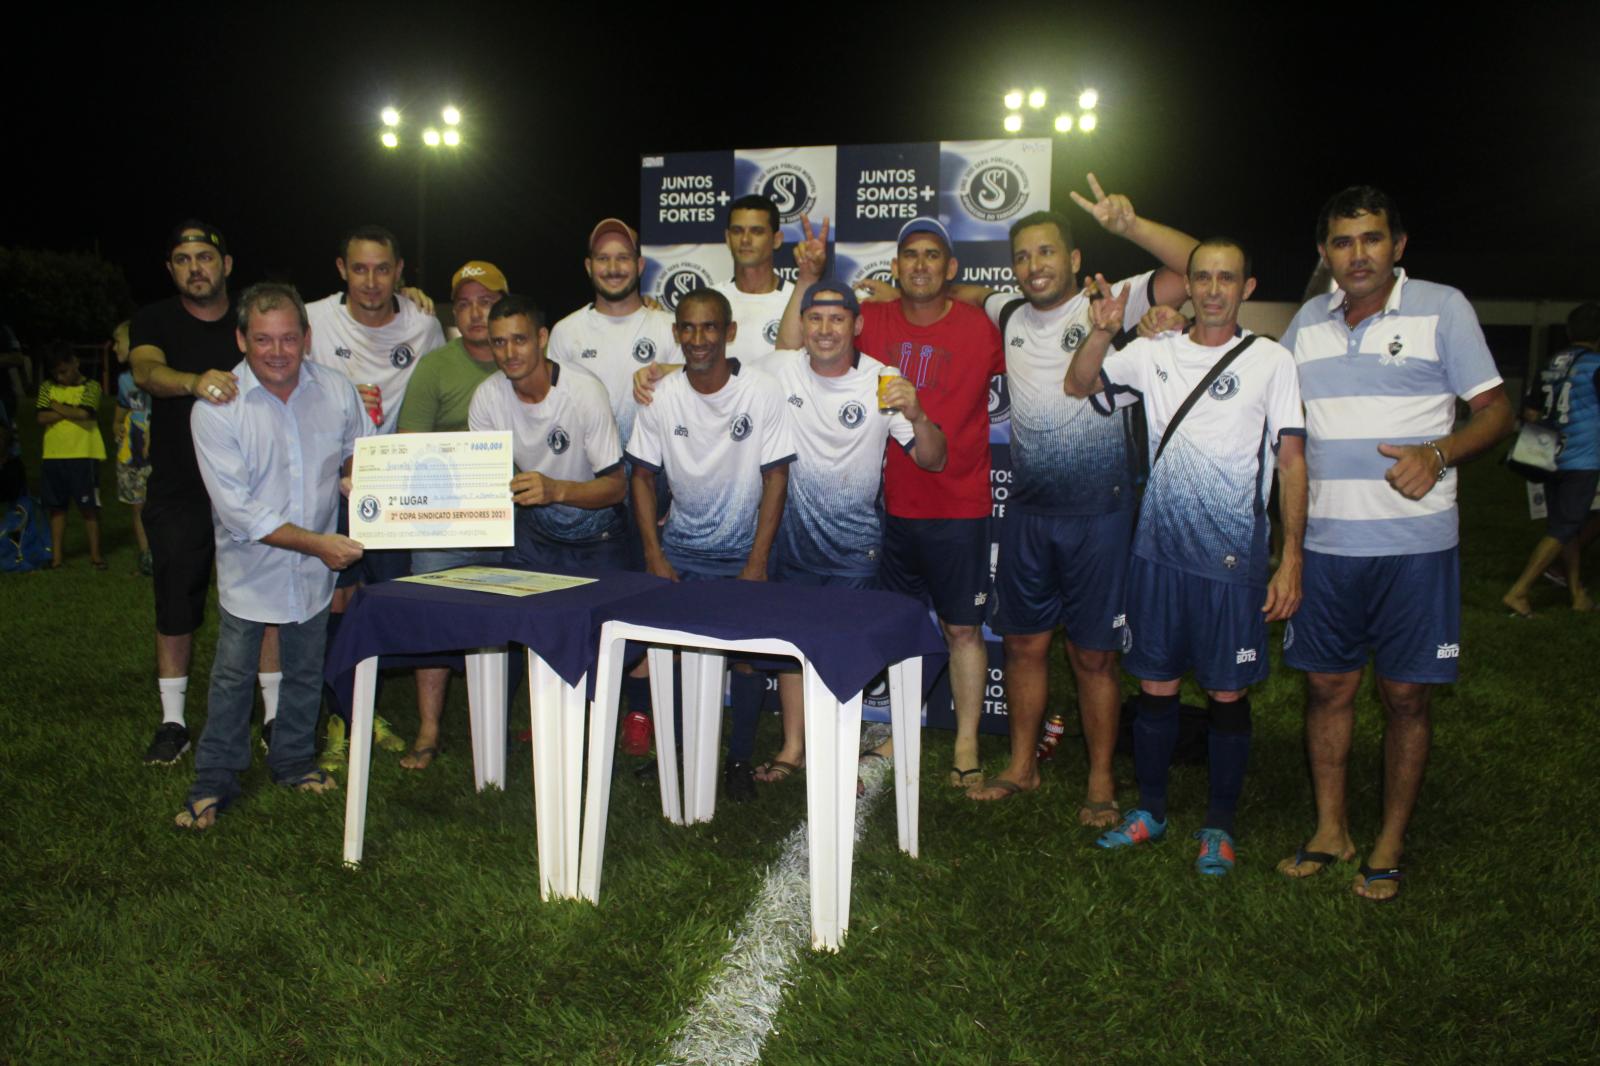 Titica/G7 conquista o título de campeão do torneio de minicampo do Sindicato dos Servidores